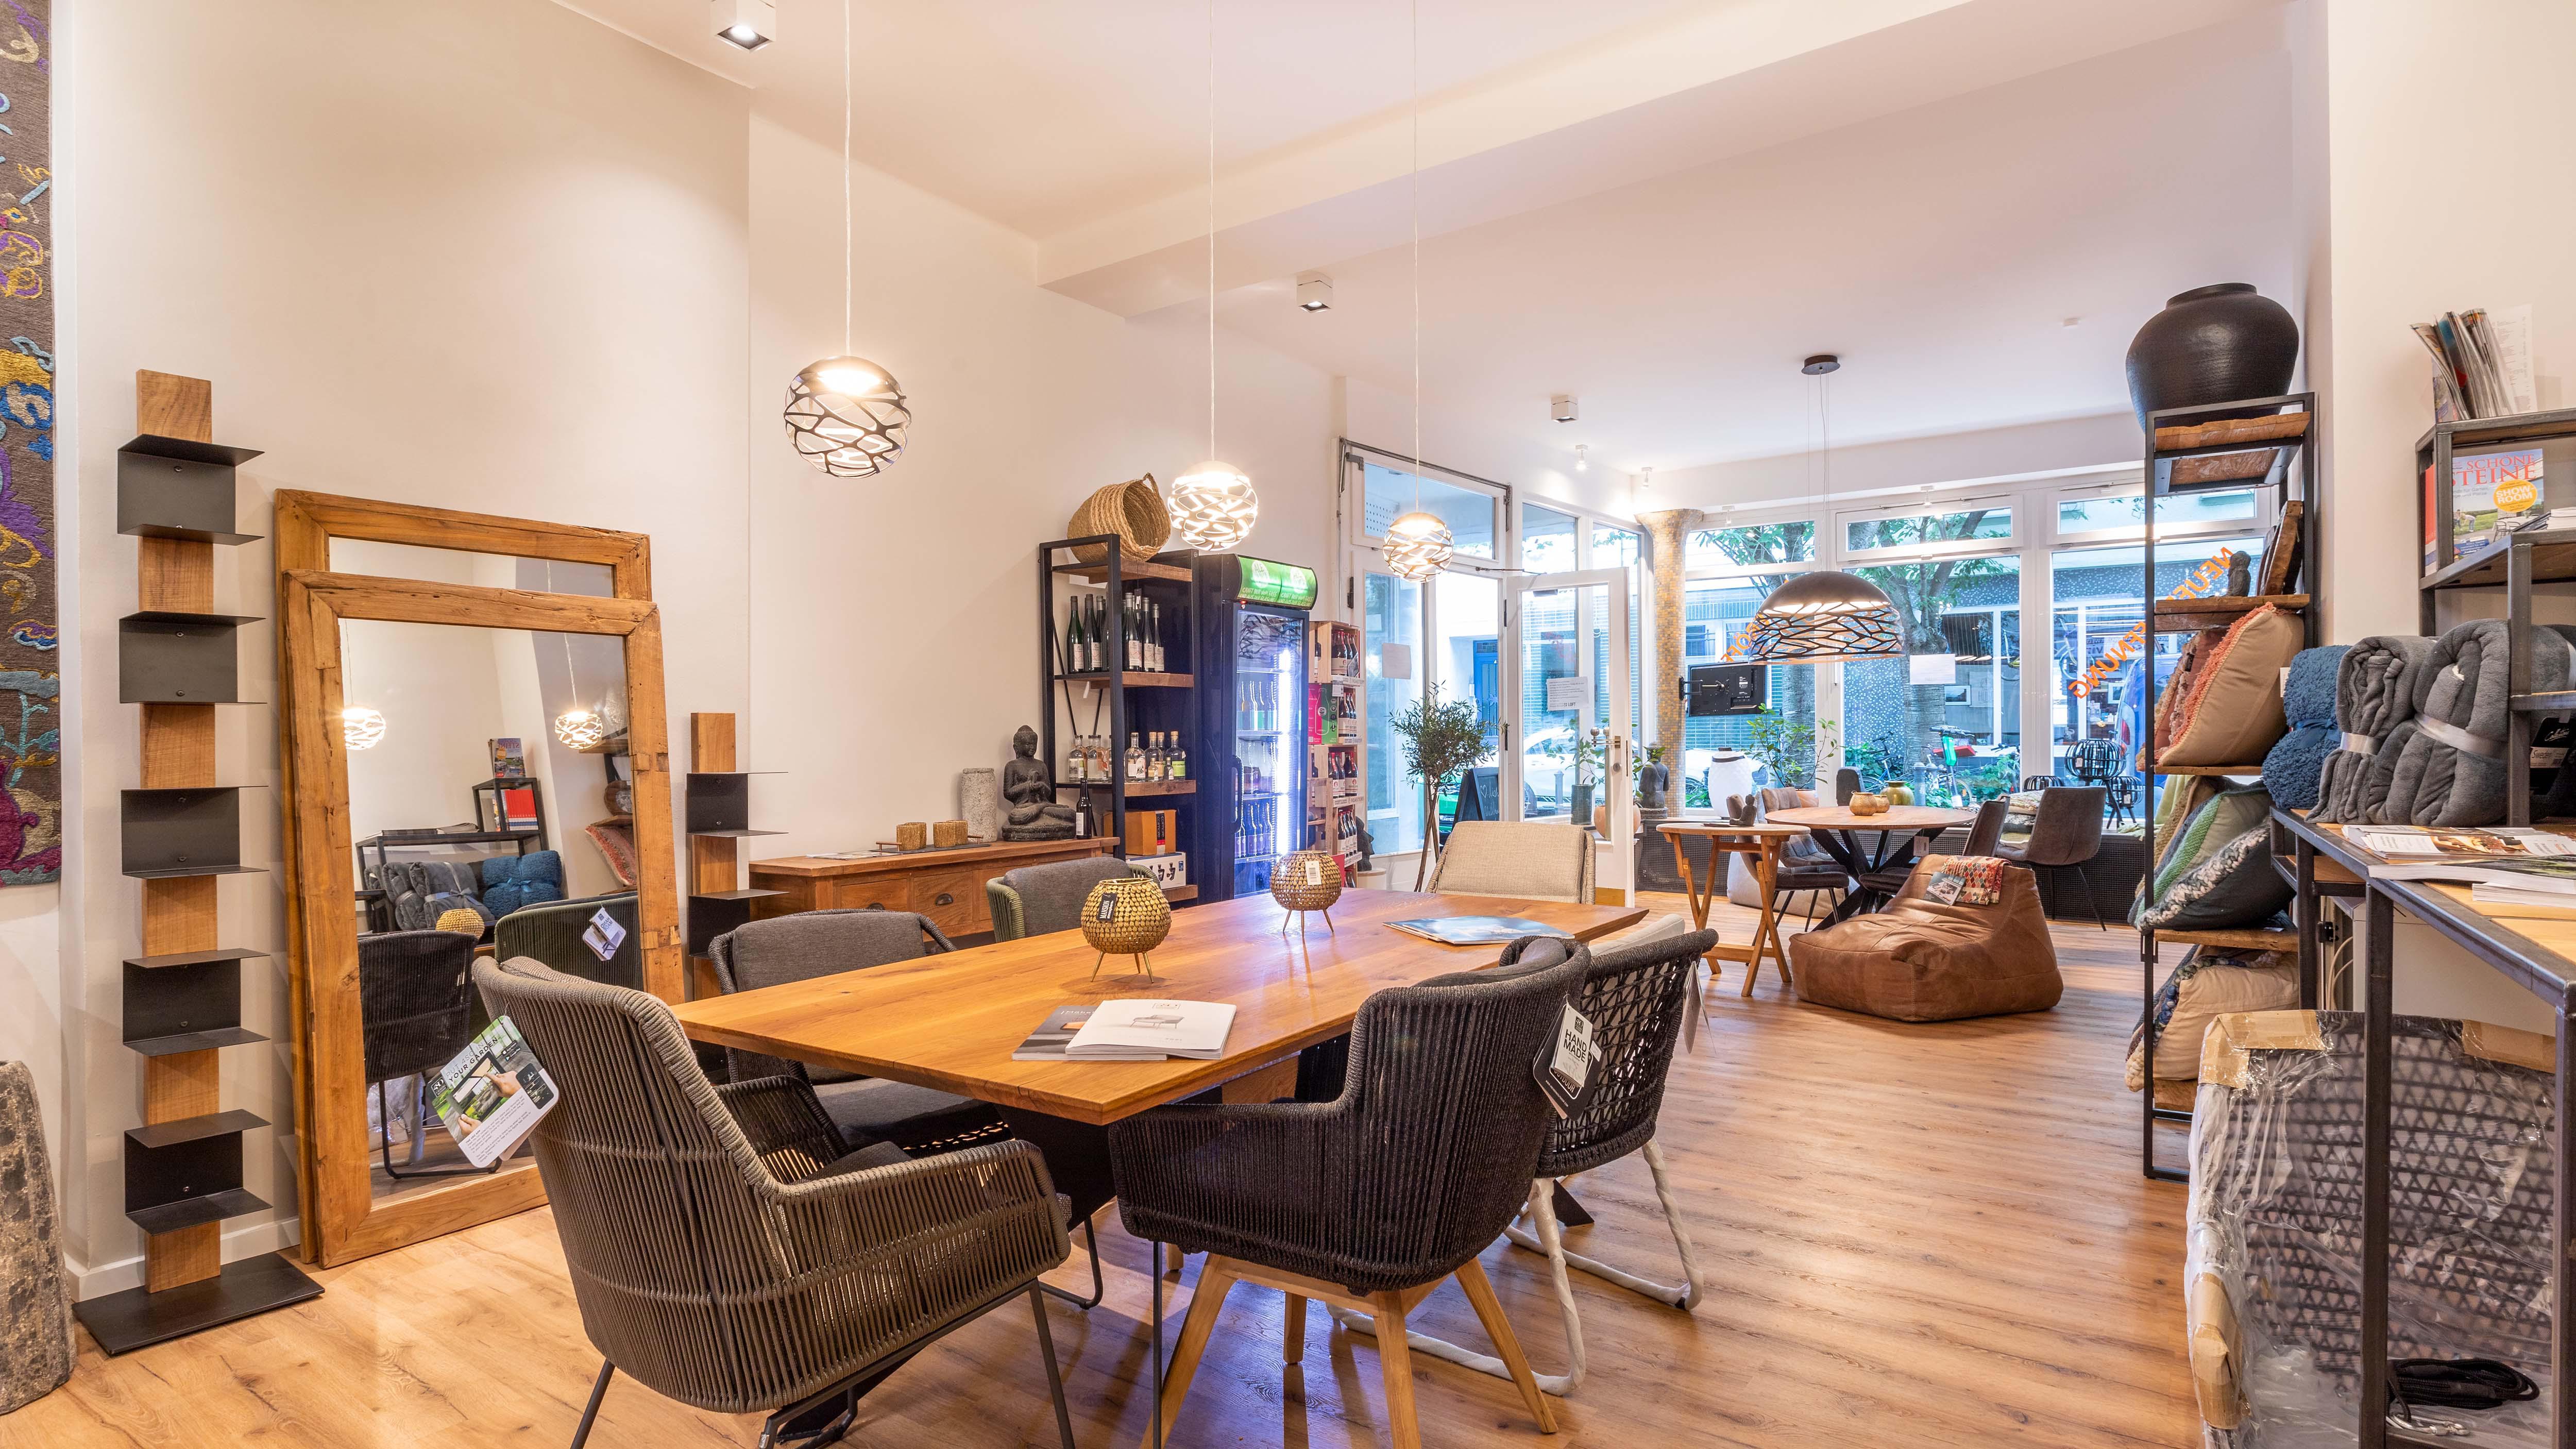 House & Living Loft | Möbel | Tische | Wohnideen aus aller Welt| Bonn, Breite Str. 70 in Bonn